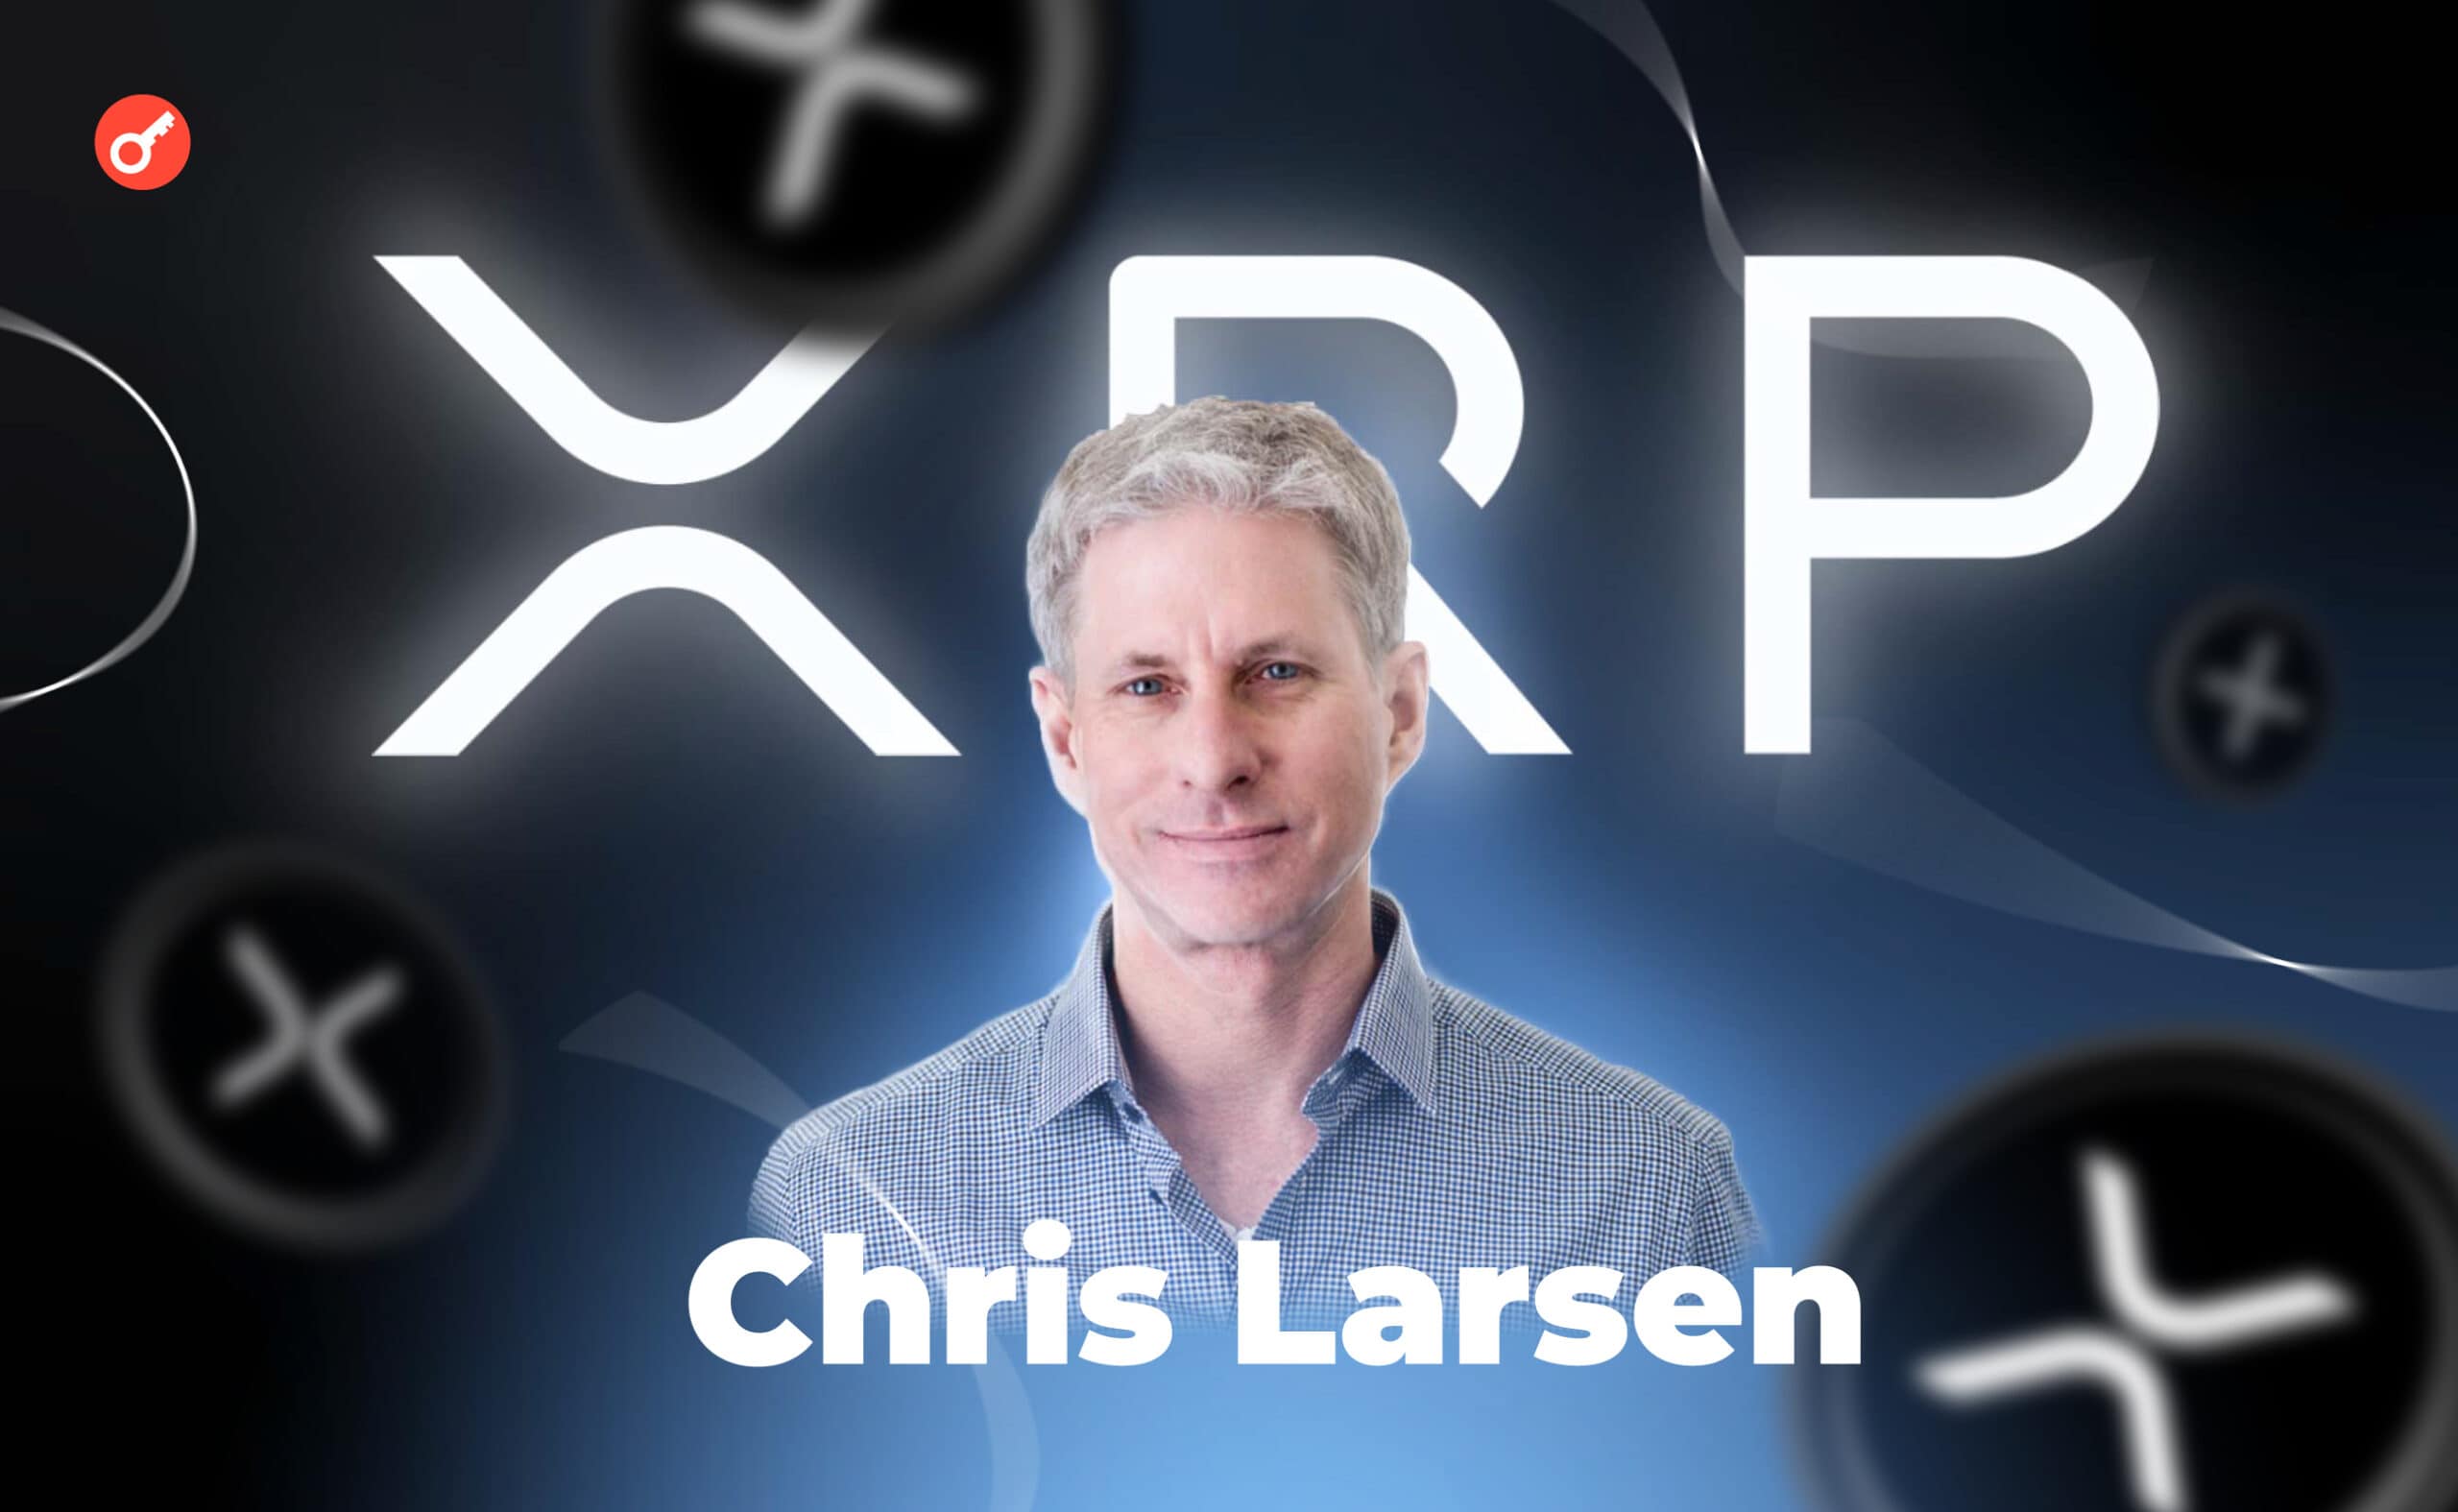 Крис Ларсен: биография основатель XRP и оценка его состояния. Заглавный коллаж статьи.